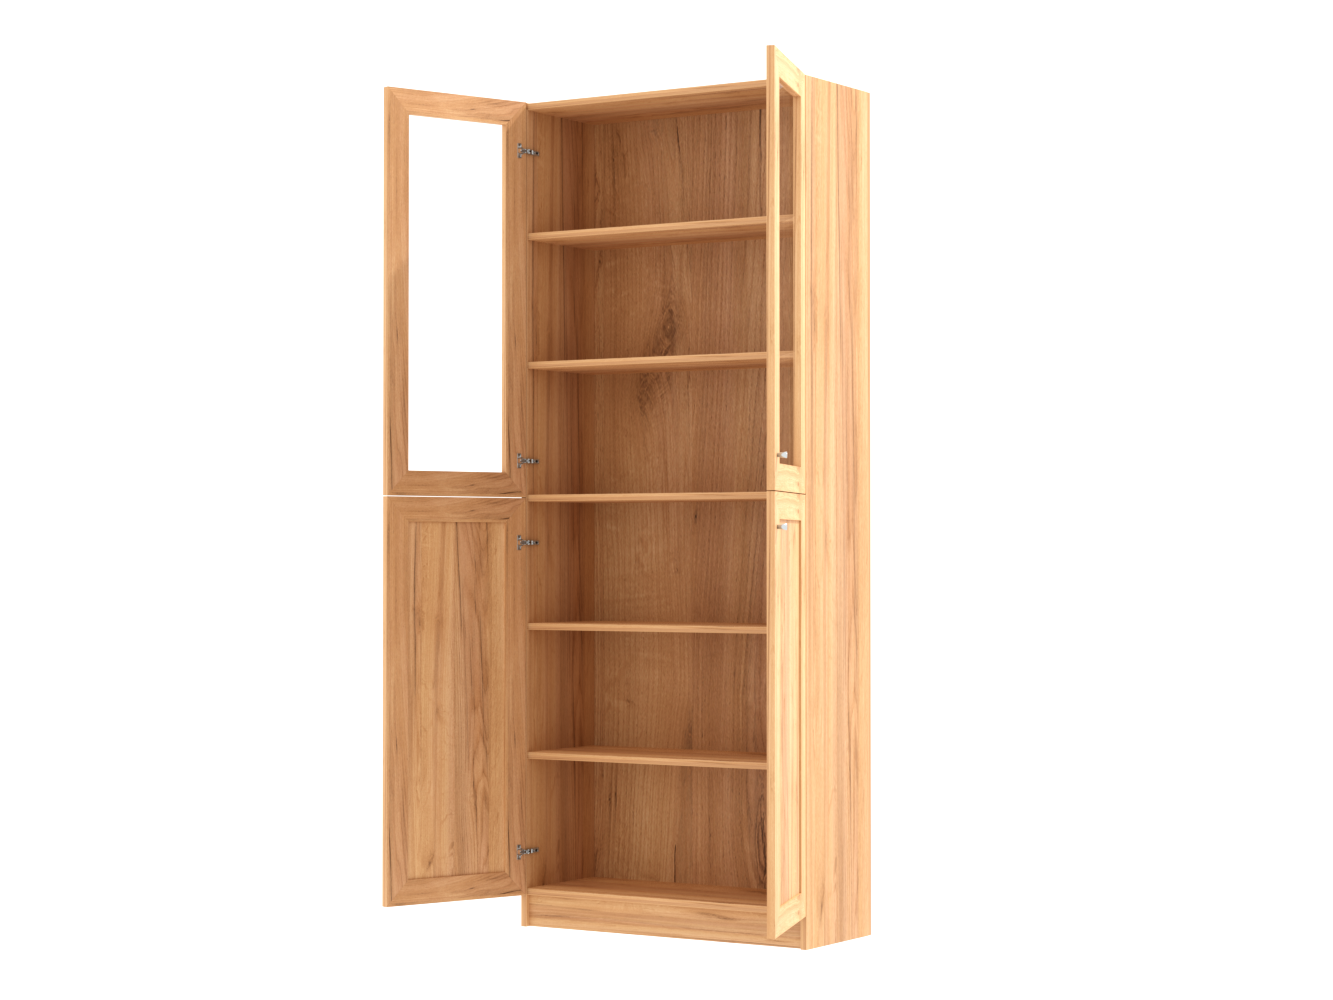  Книжный шкаф Билли 334 oak gold craft ИКЕА (IKEA) изображение товара